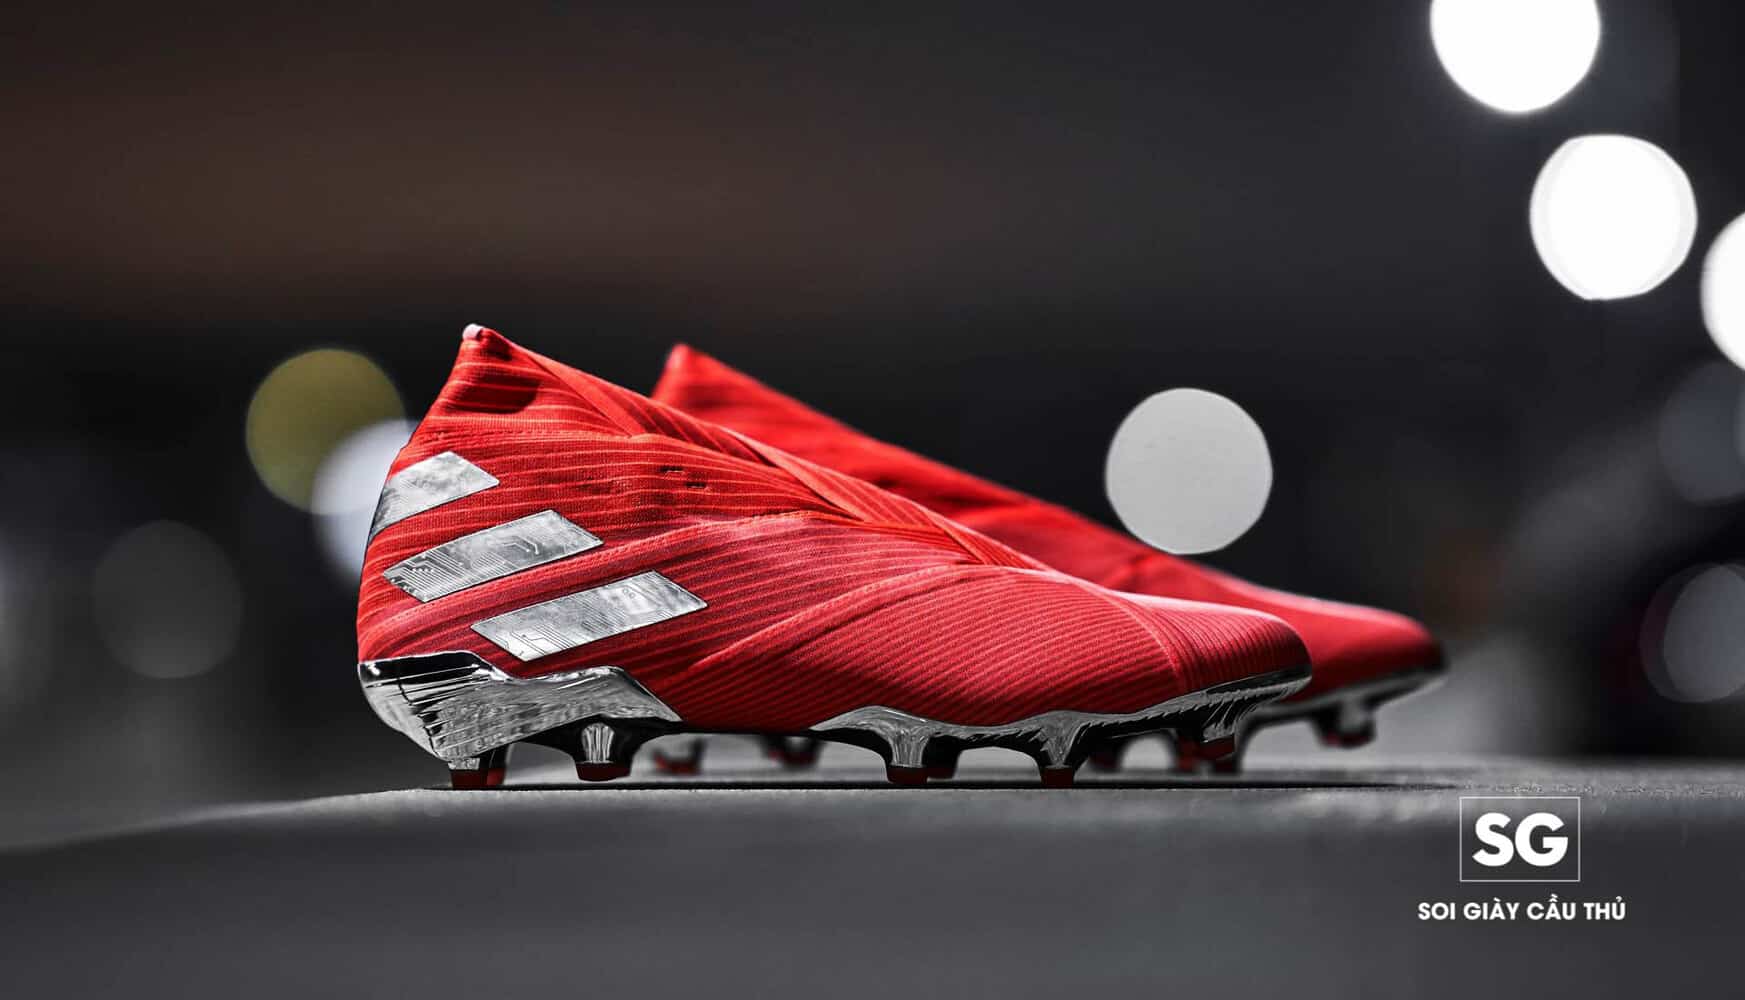 Mẫu giày đá bóng Adidas Nemeziz 19+ kịch độc được sử dụng trên chân của tiền đạo Liverpool